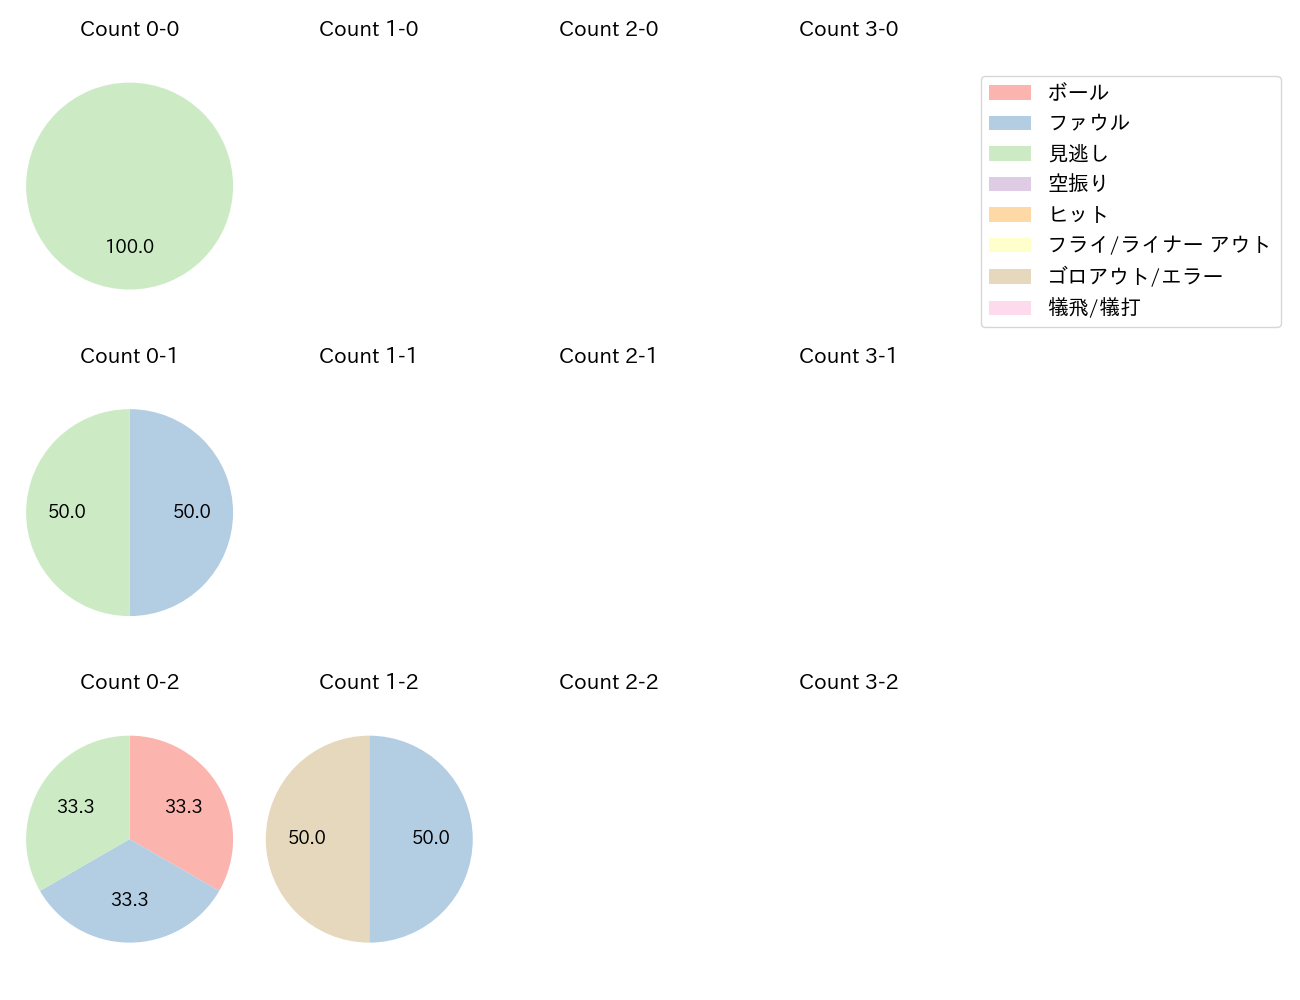 小島 和哉の球数分布(2022年6月)